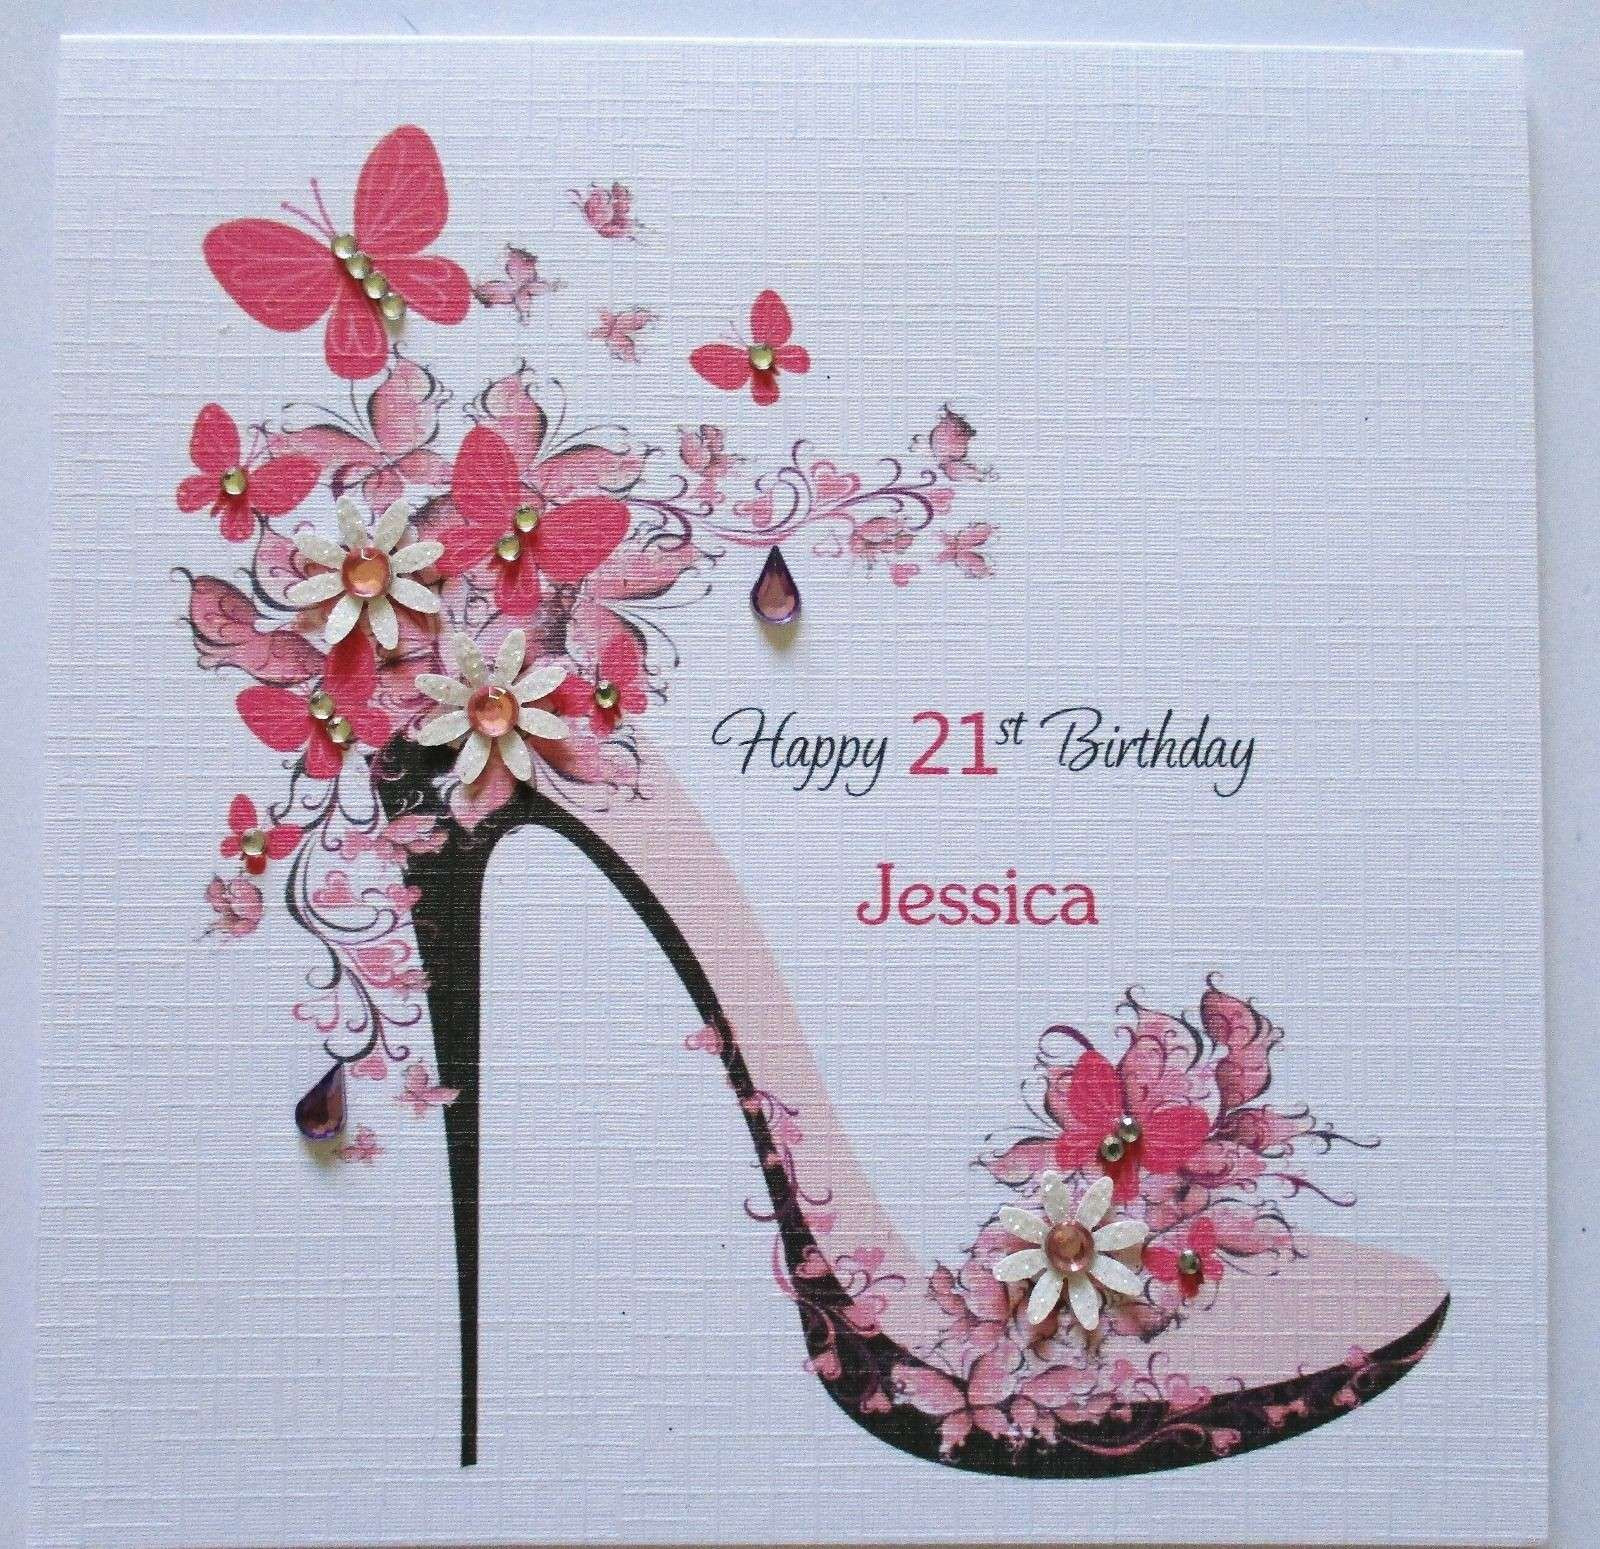 Happy Birthday Card Ideas For Mom Birthday Wishes To Mom 22nd Birthday Card Ideas Luxury Happy